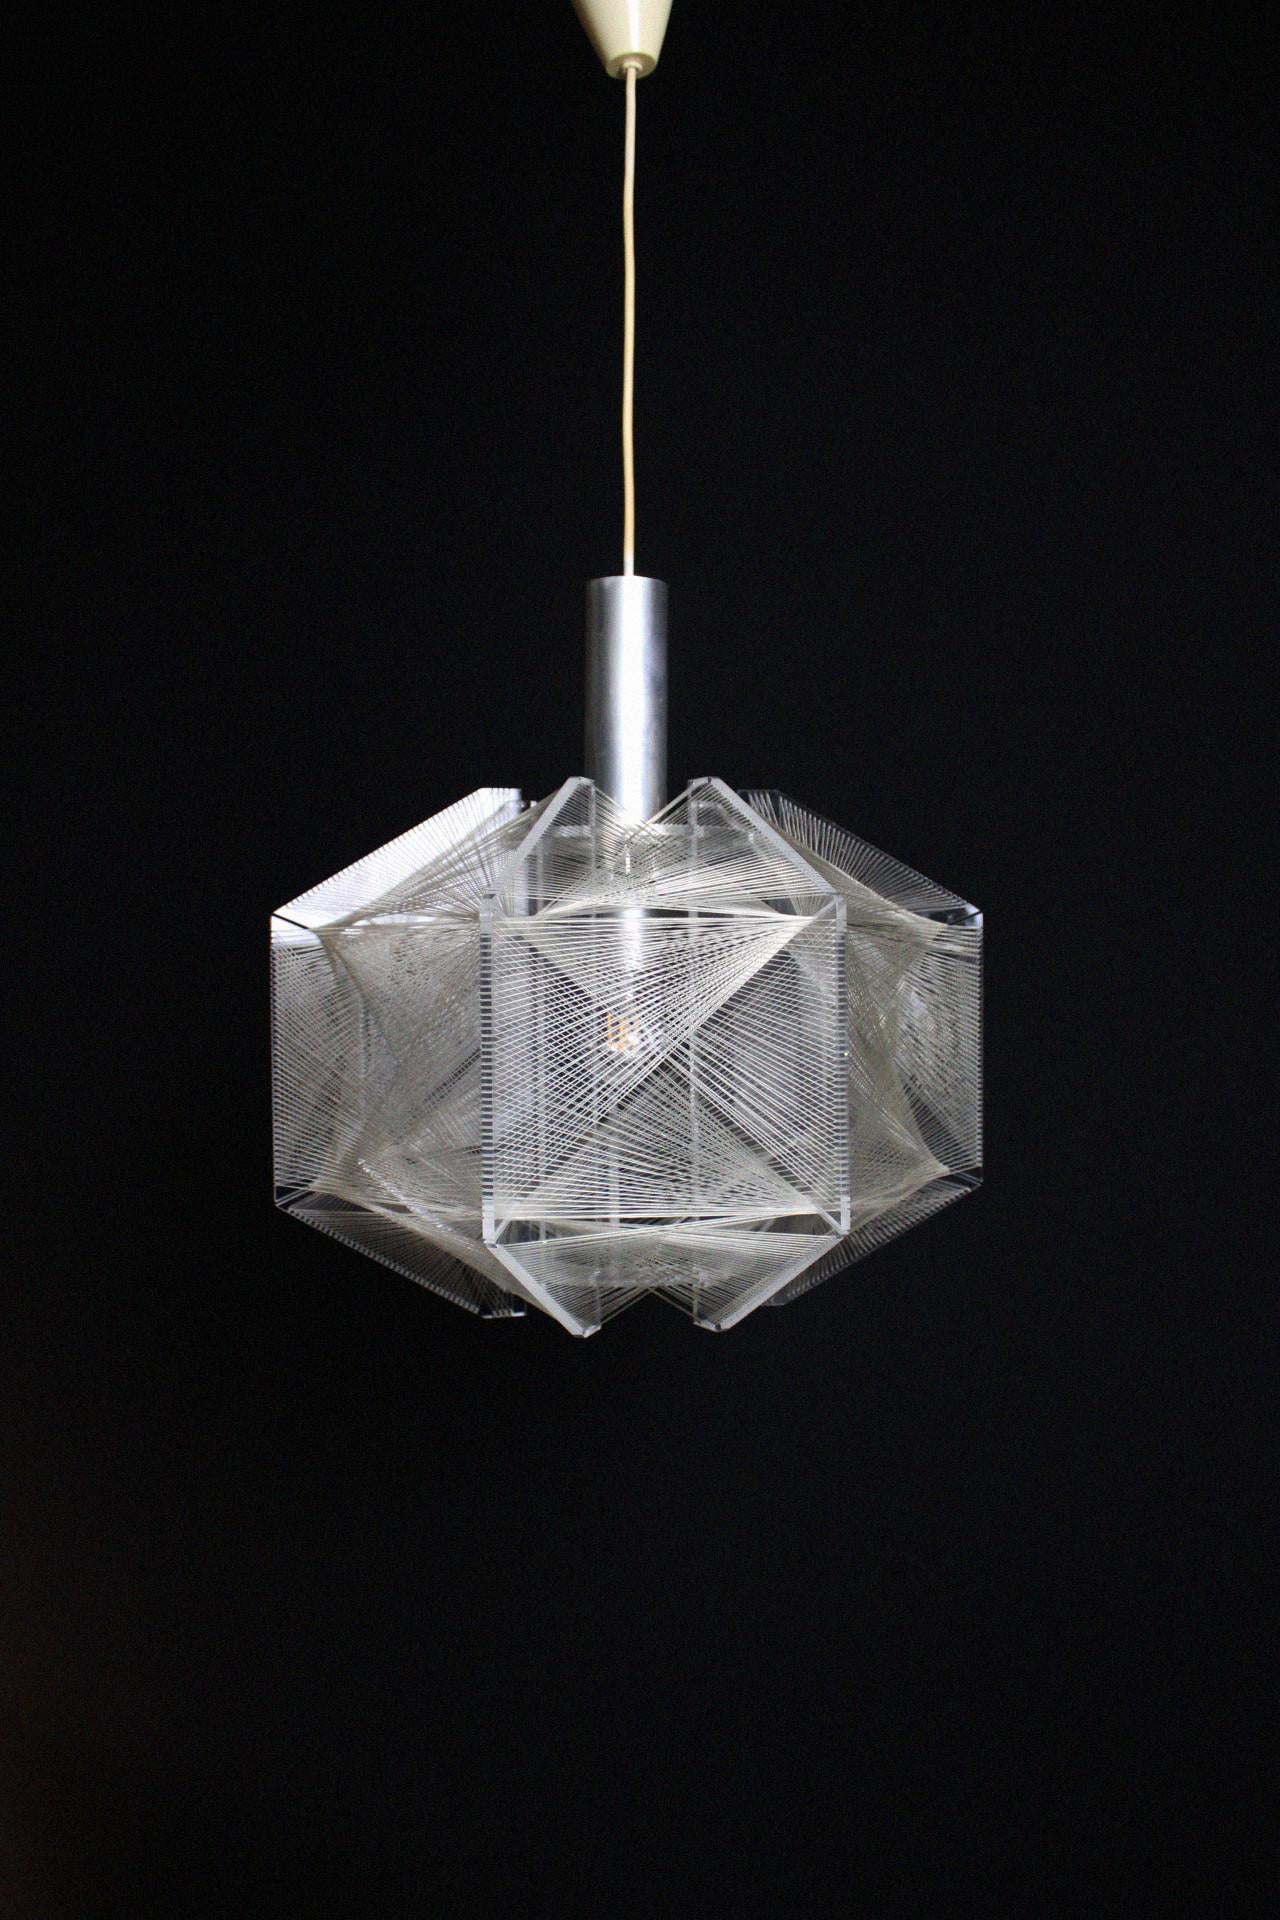 Cette belle lampe suspendue intemporelle date des années 1970 et a été conçue par Paul Secon pour le fabricant allemand Sompex, une entreprise allemande qui fabrique encore aujourd'hui des lampes de grande qualité. La lampe est en parfait état